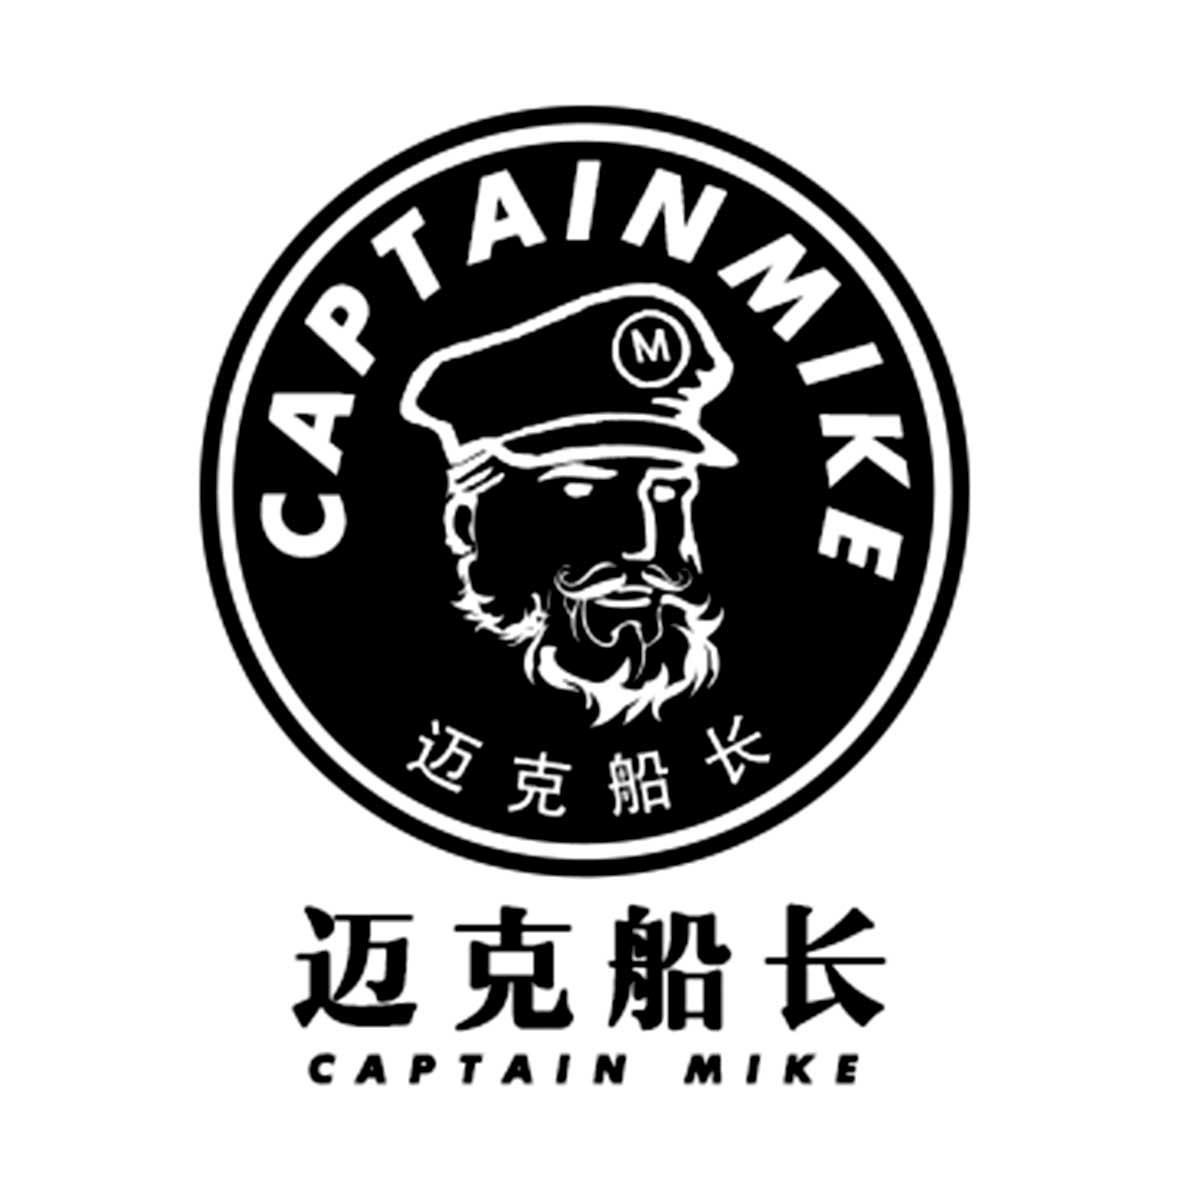 迈克船长 captain mike m